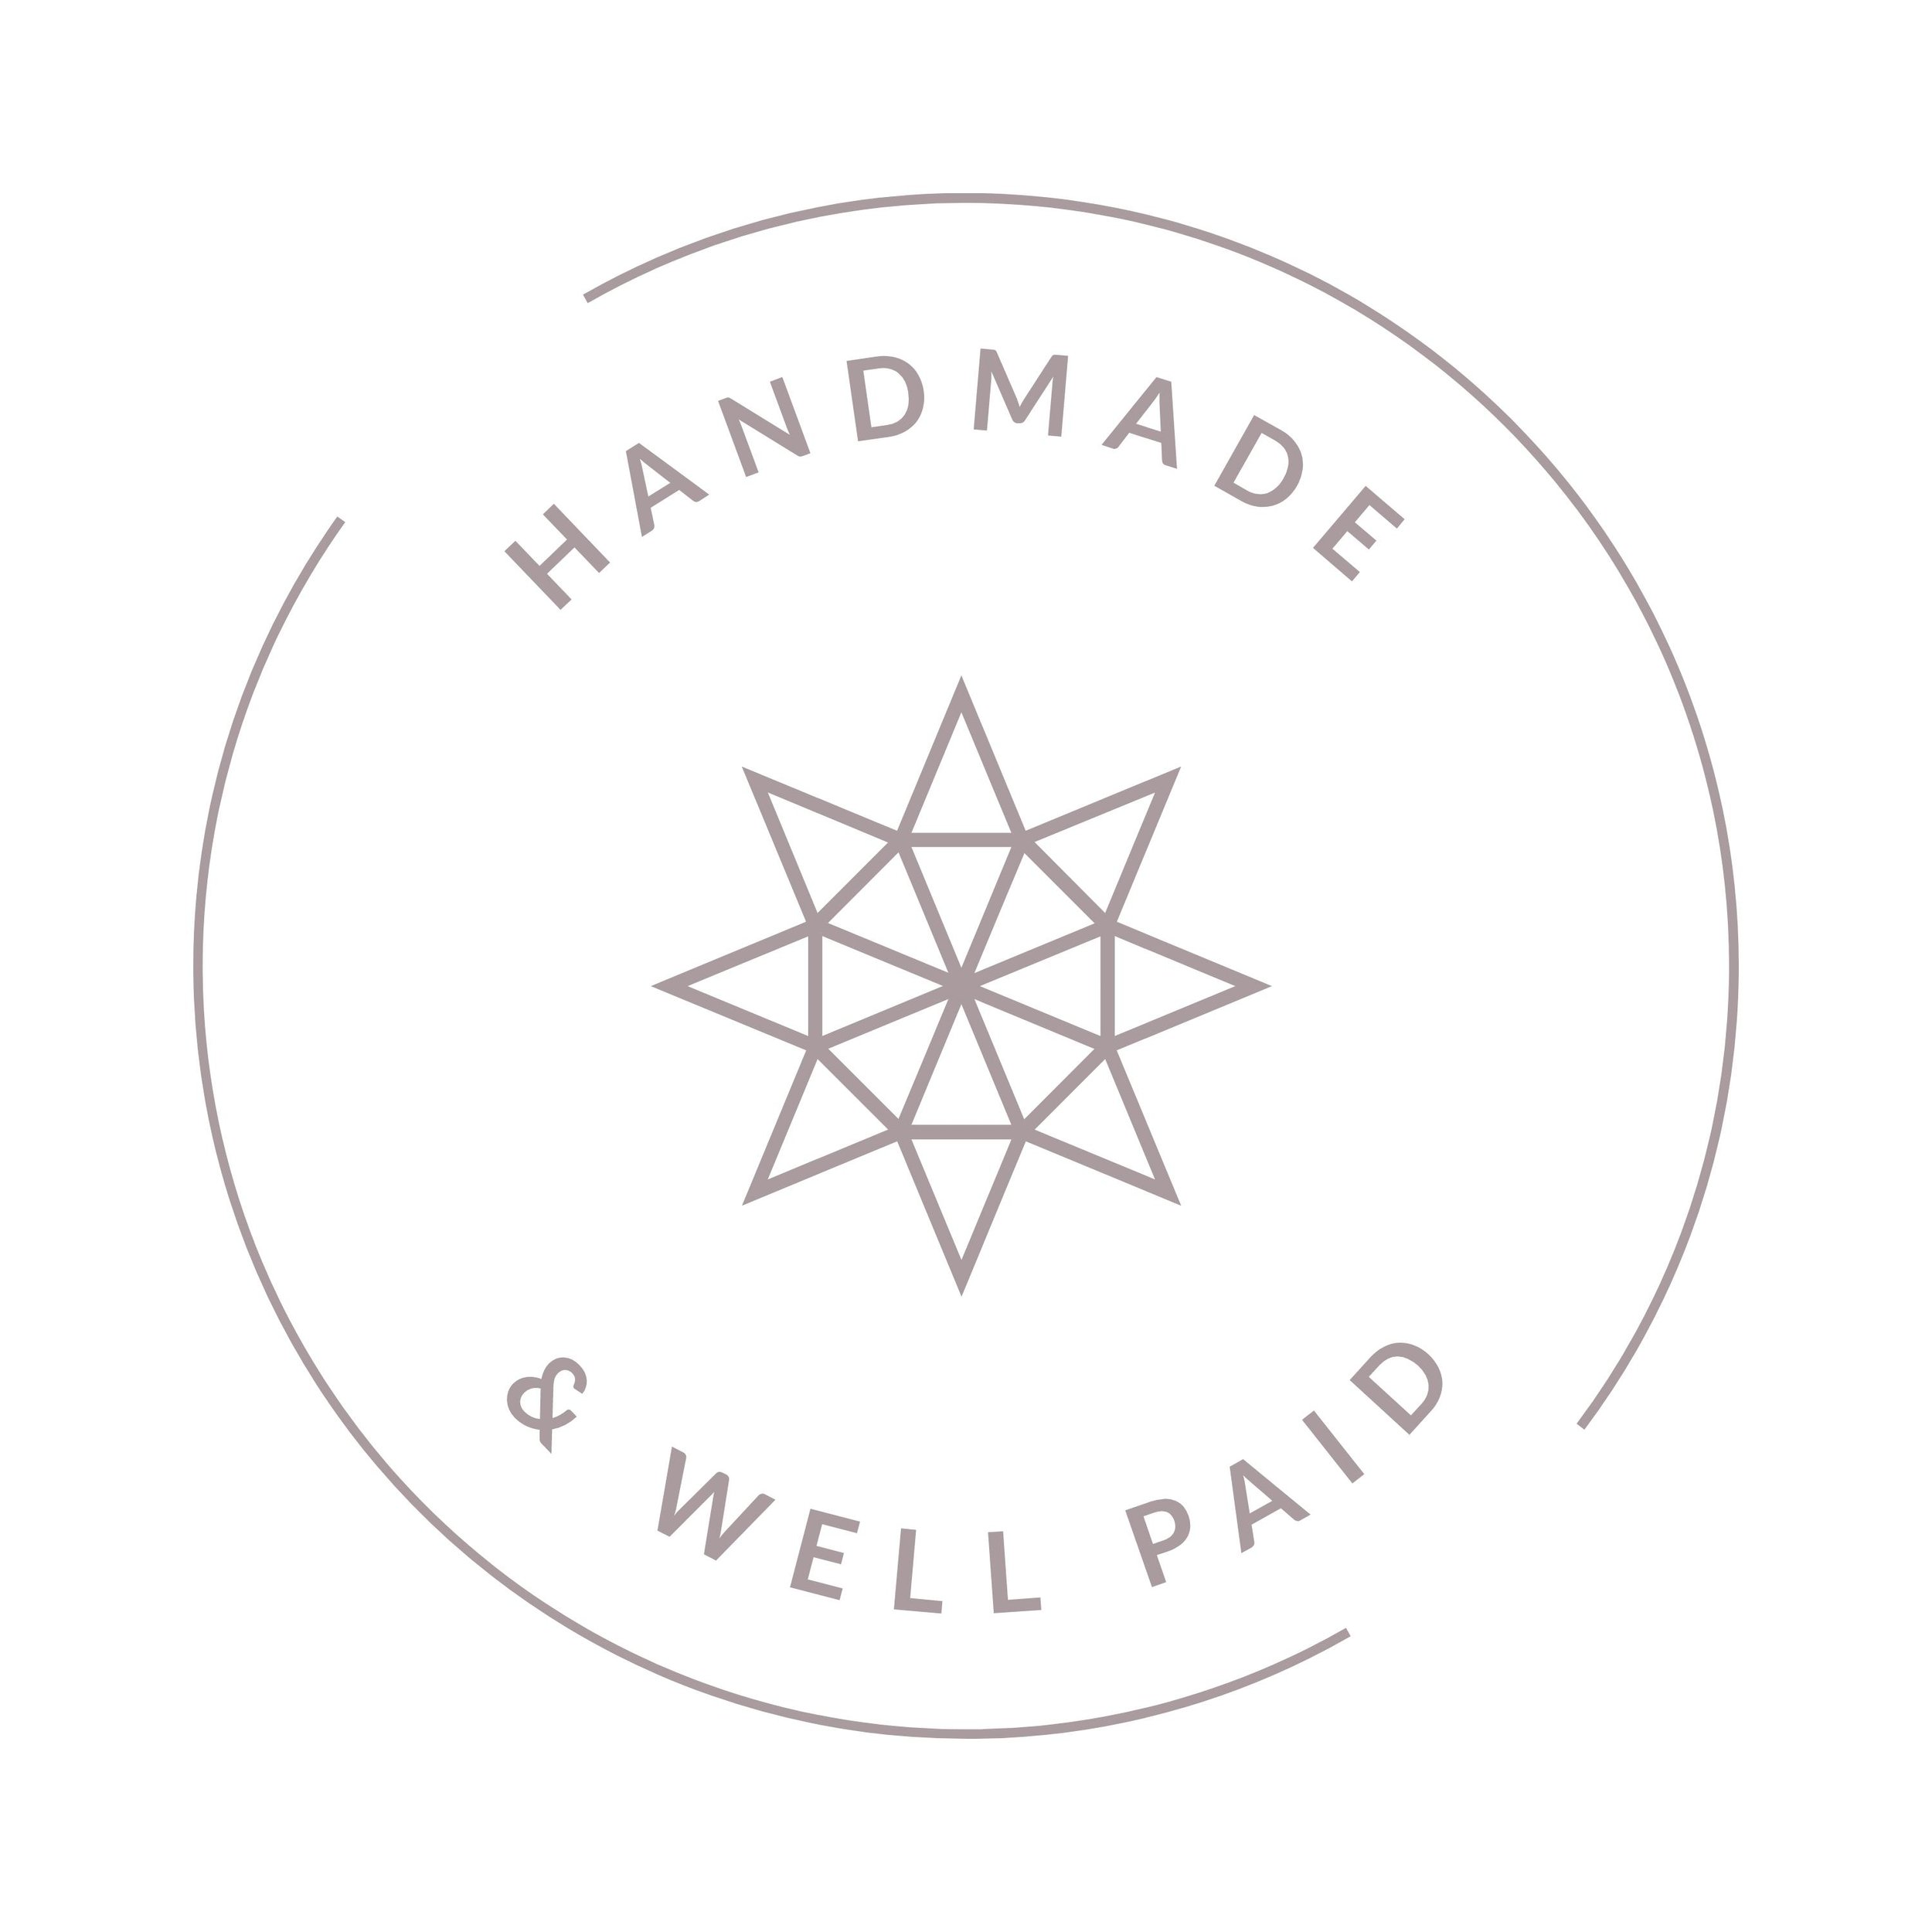 HandmadeWellPaid6.jpg